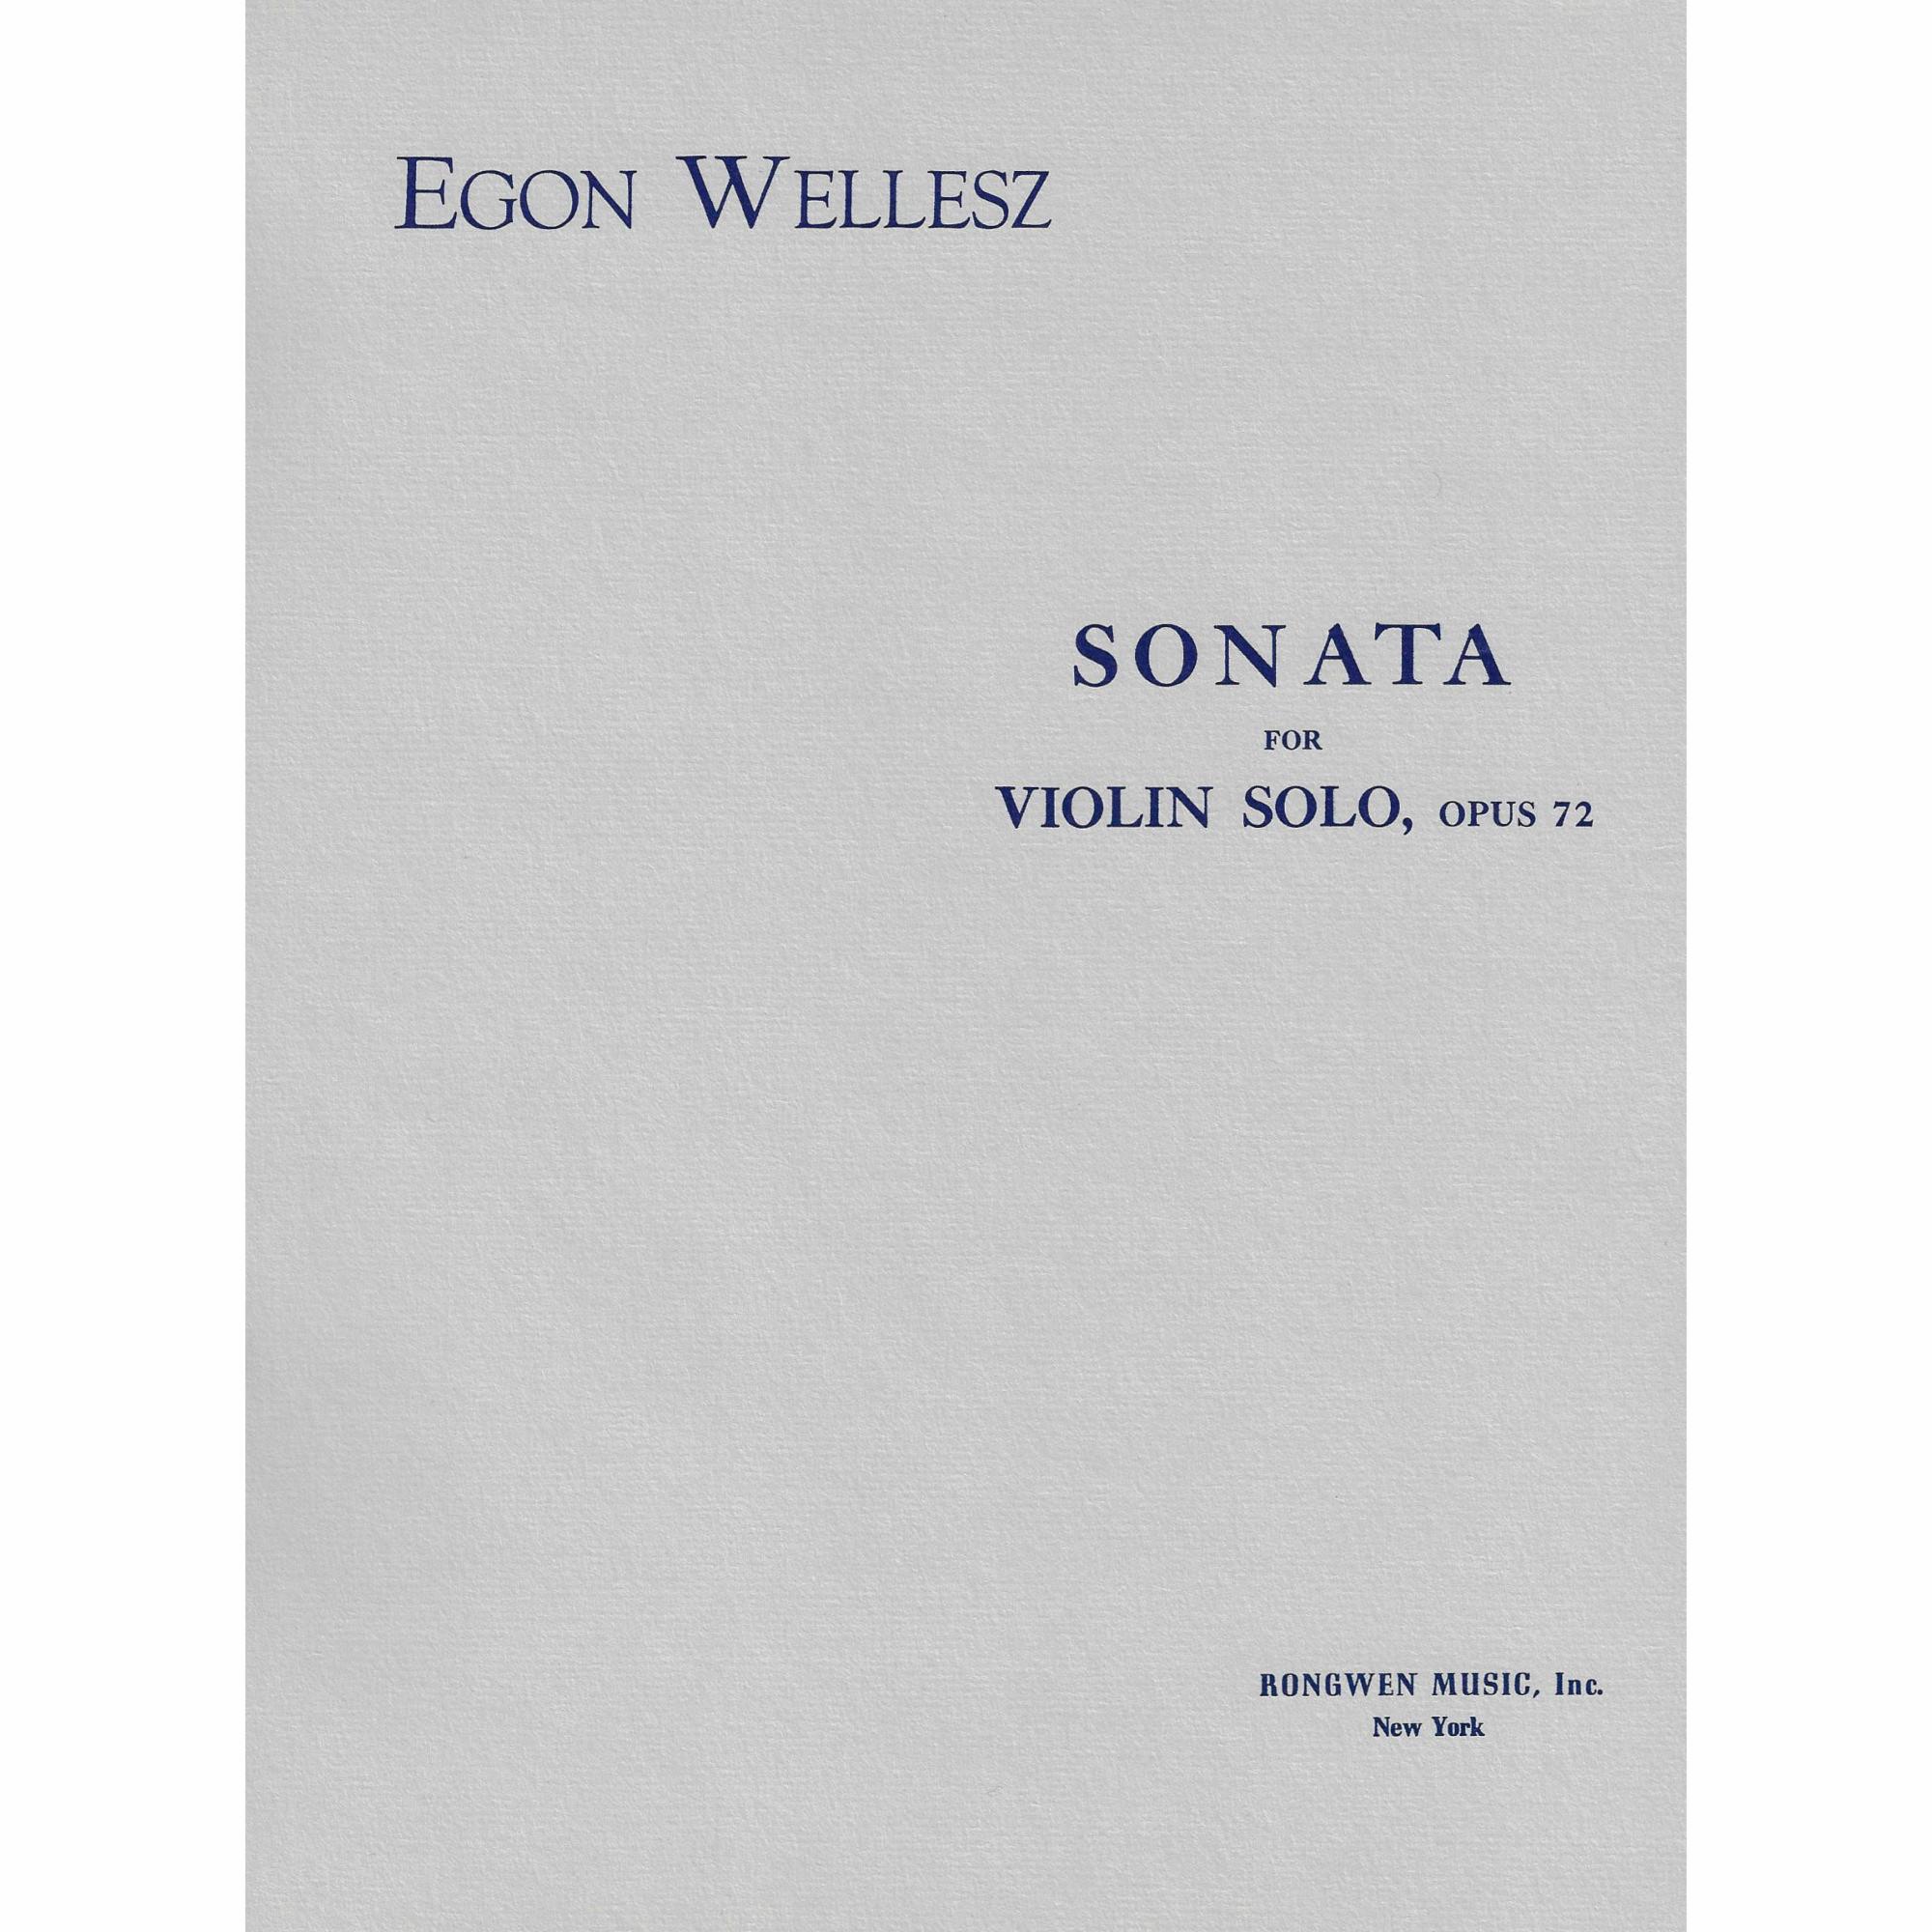 Wellesz -- Sonata, Op. 72 for Solo Violin